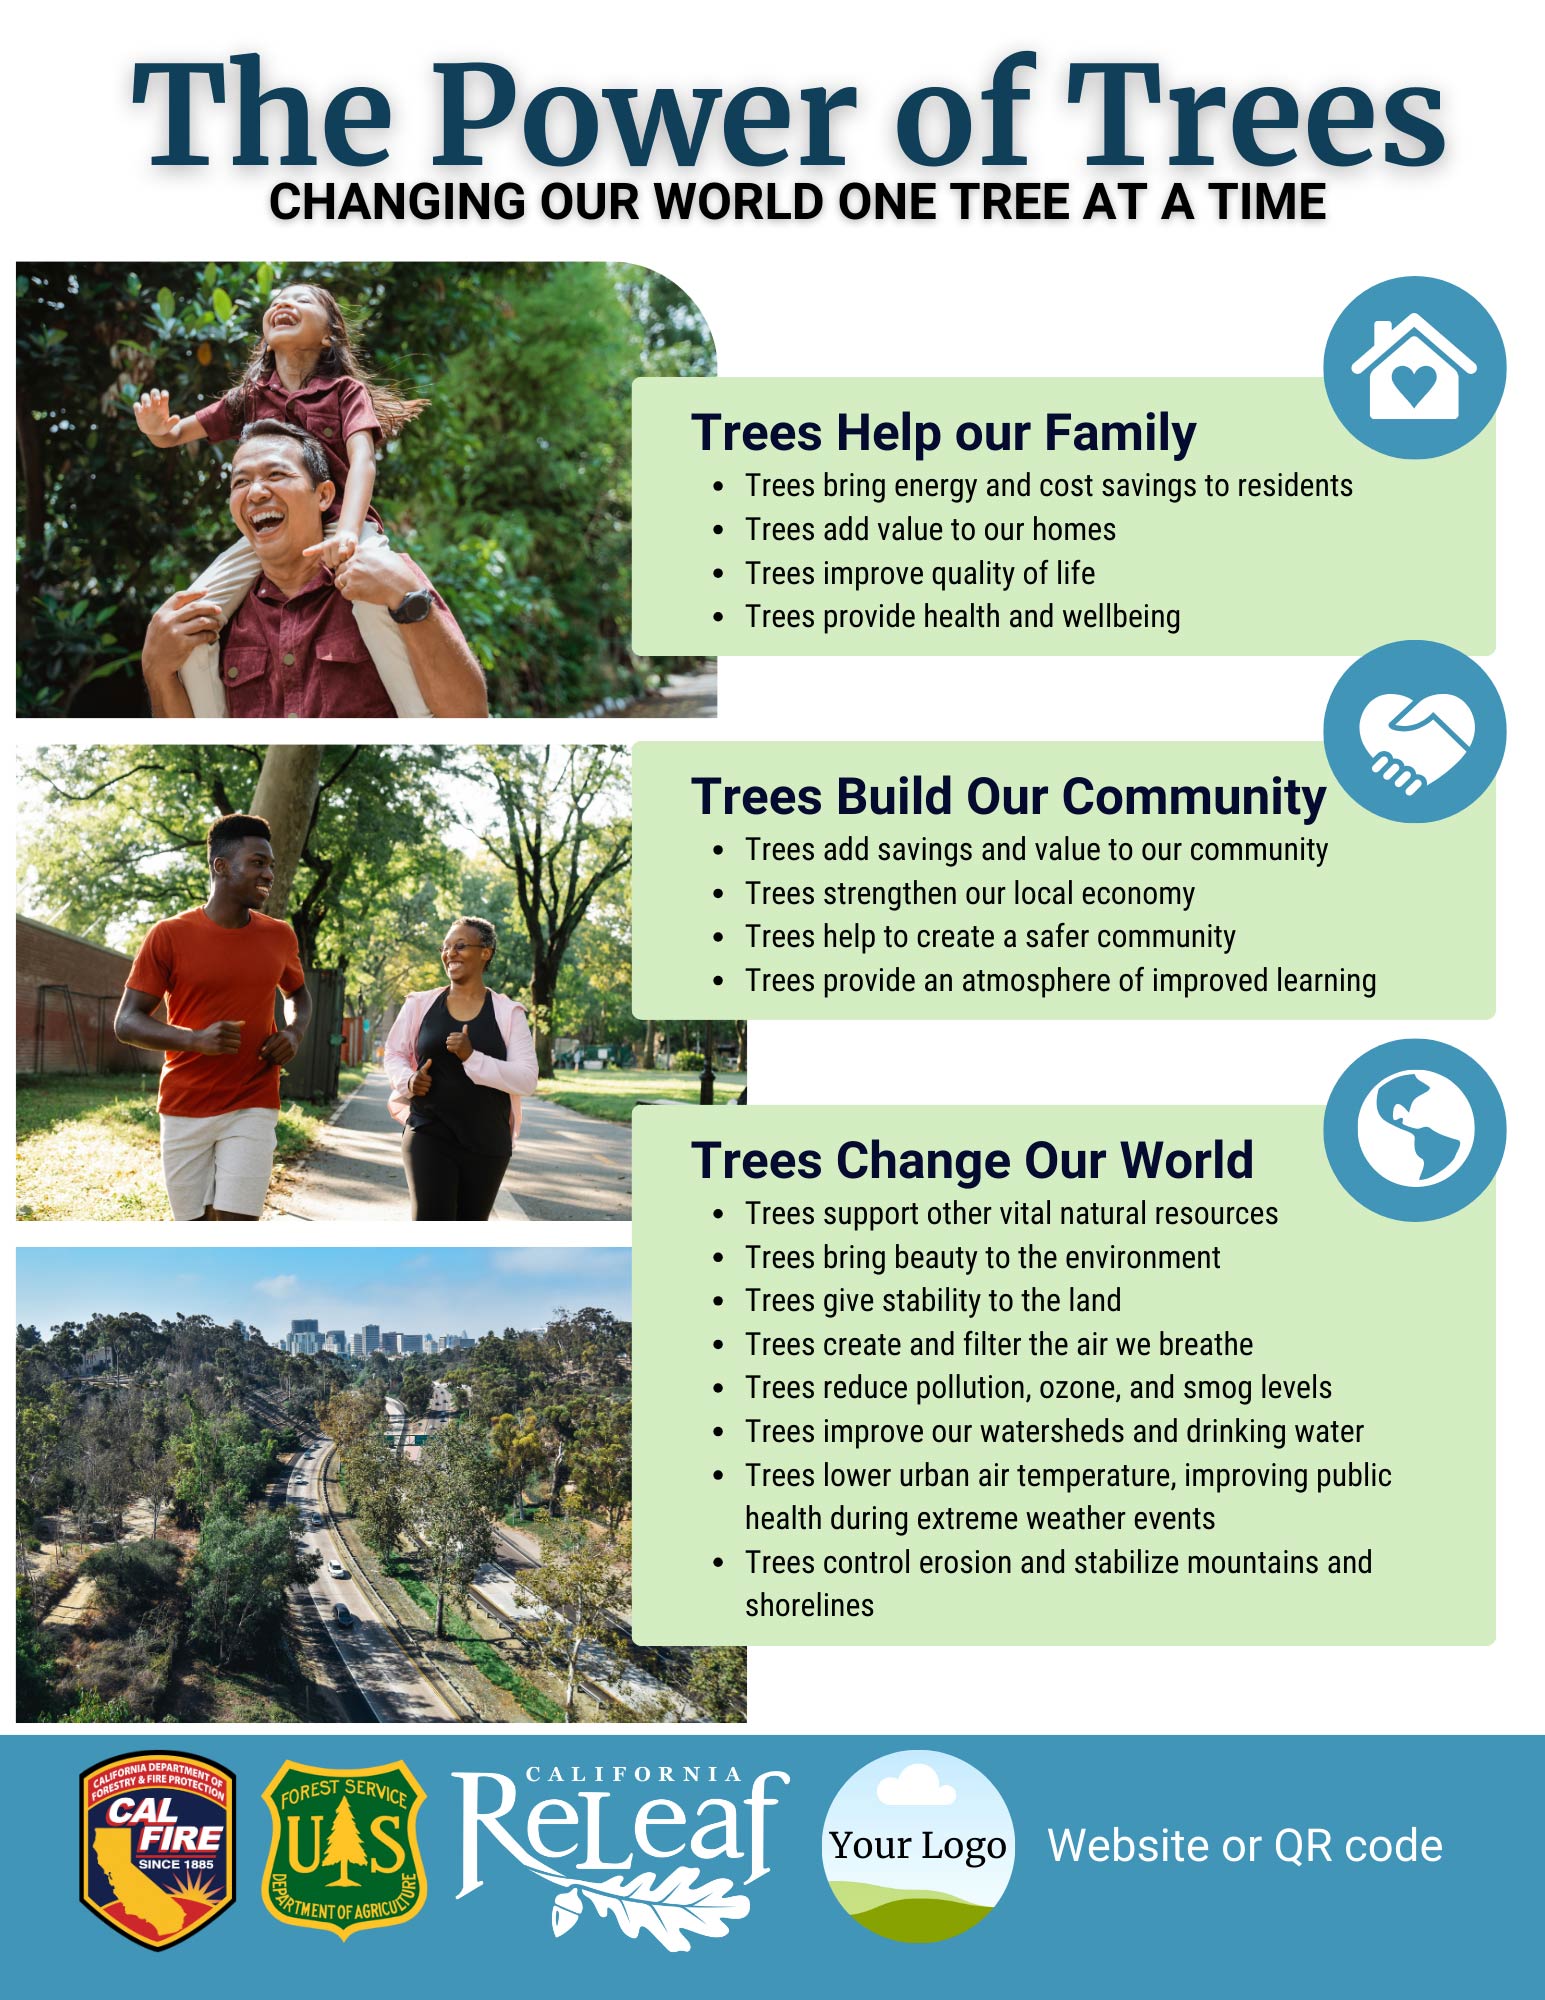 पेड़ों की शक्ति फ़्लायर टेम्प्लेट पूर्वावलोकन छवि जिसमें पेड़ों के लाभ के साथ-साथ पेड़ों और लोगों की छवियों के बारे में जानकारी दी गई है